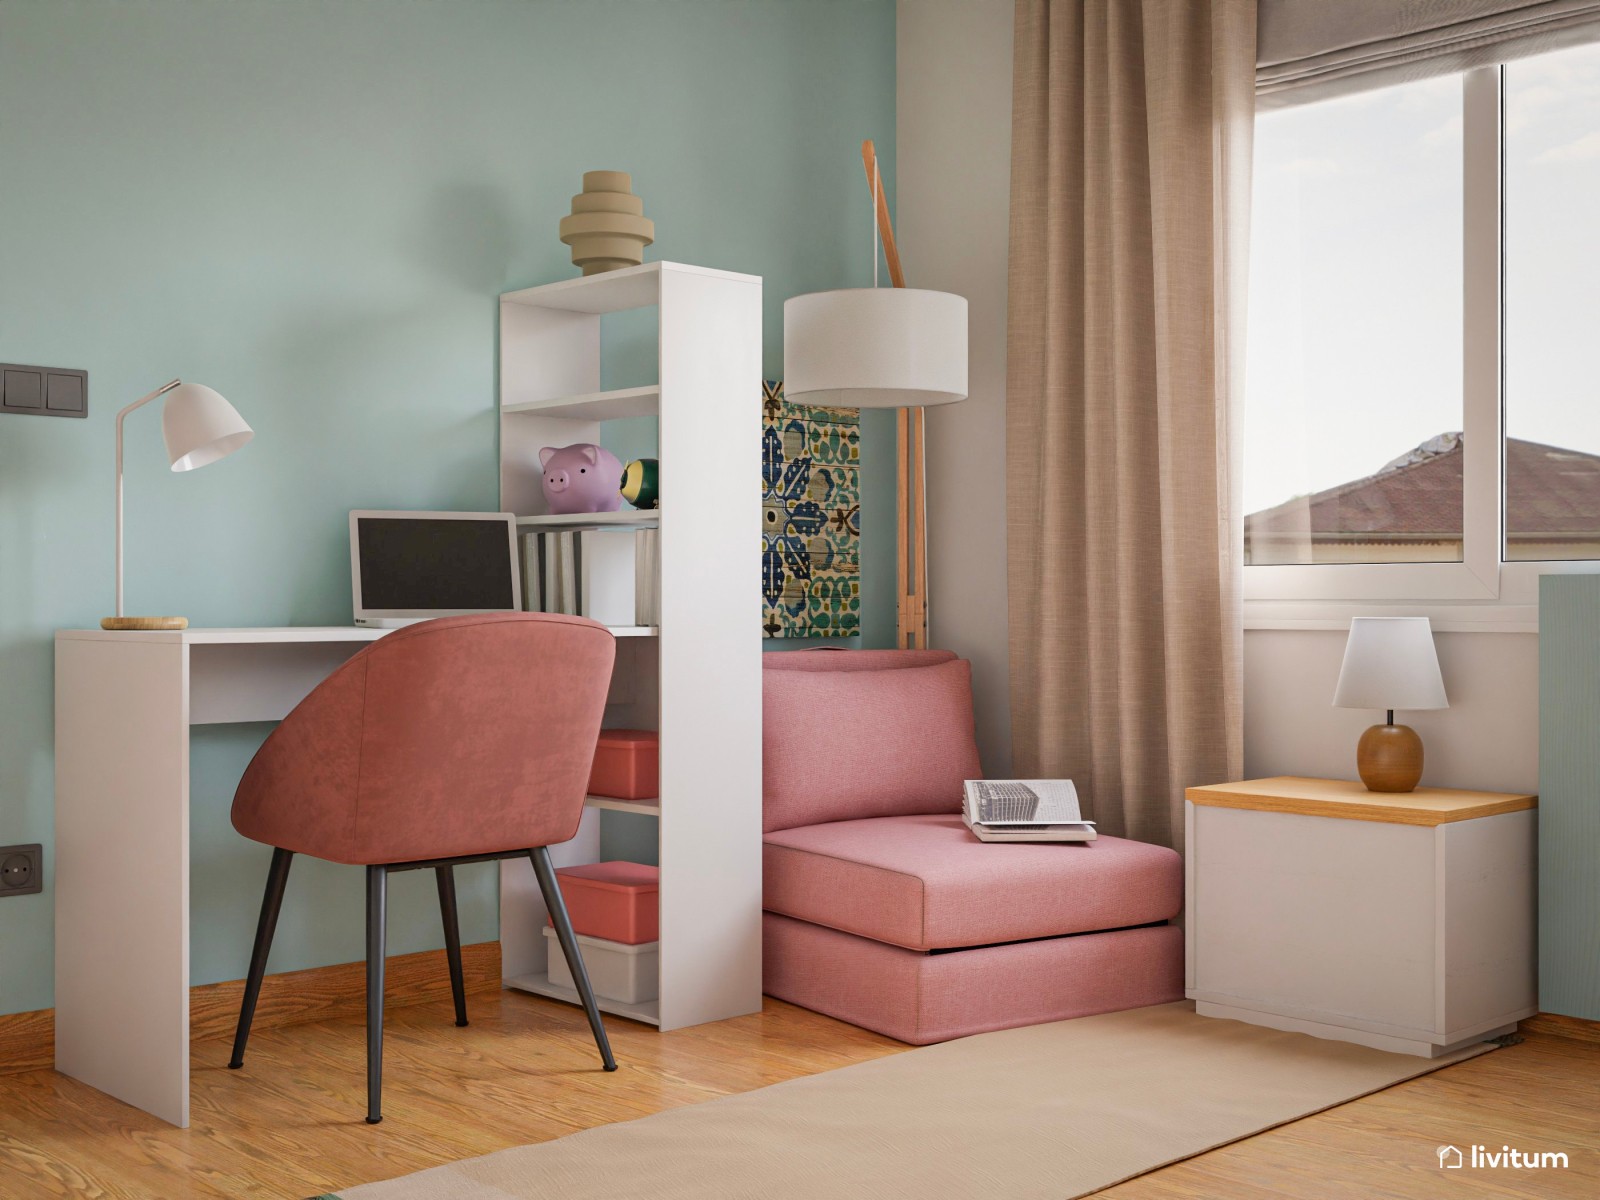 Moderna y vital habitación juvenil en verde, rosa y blanco 